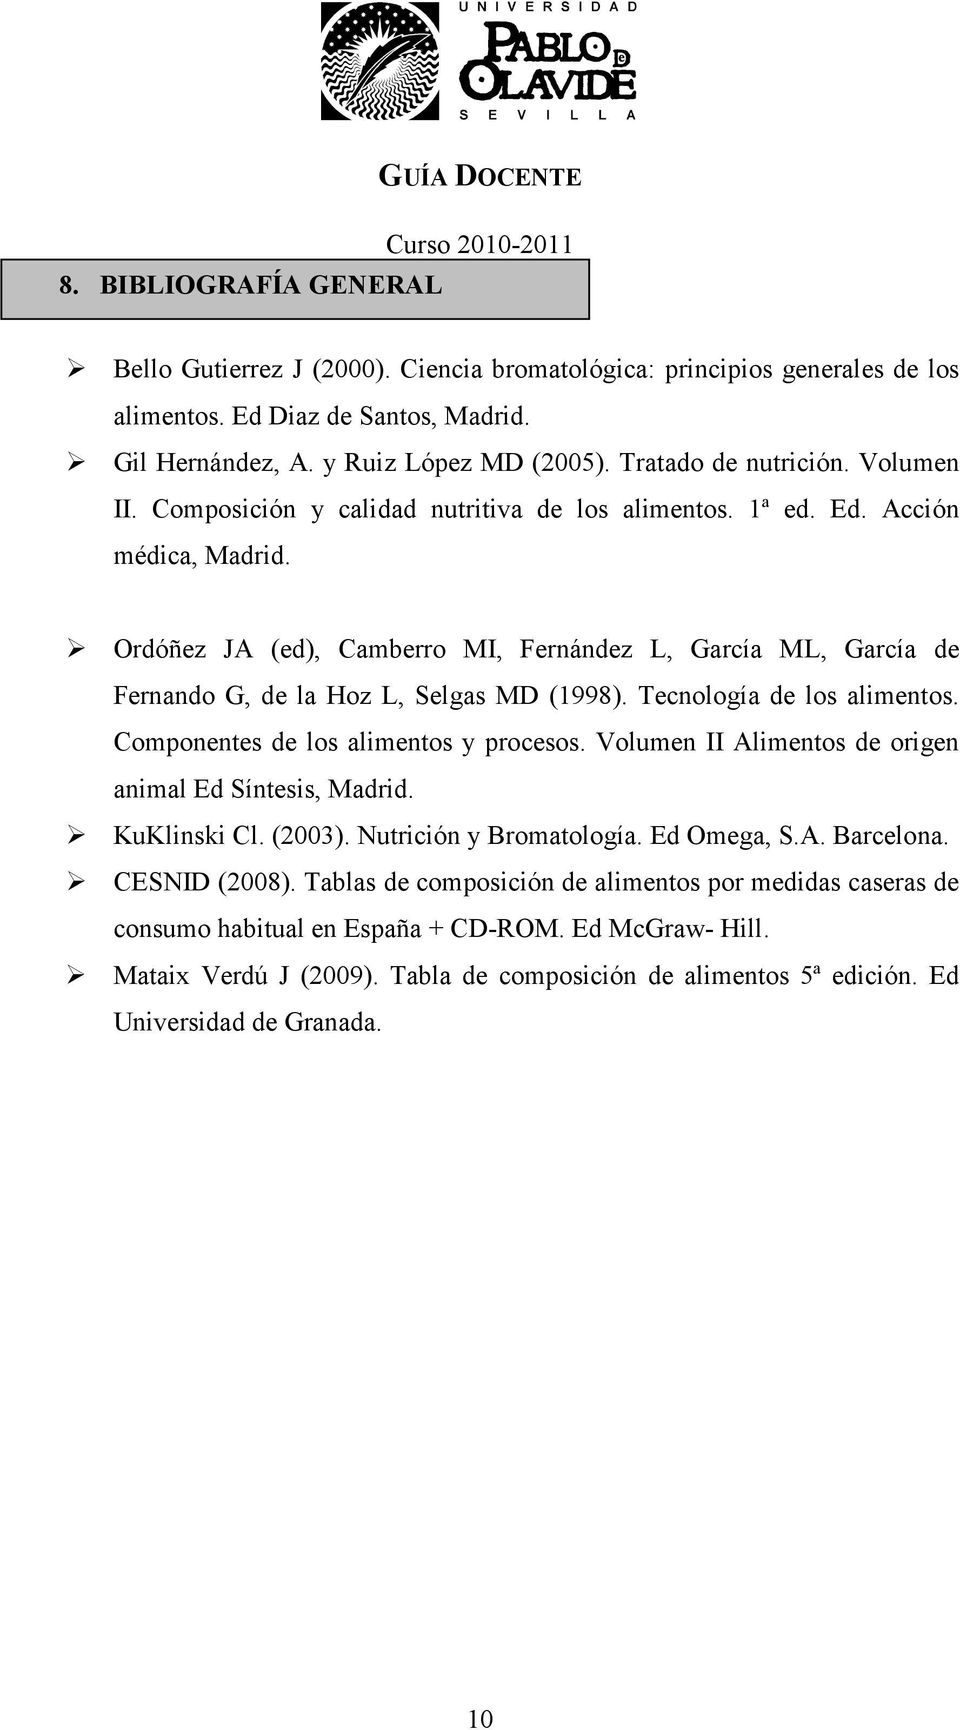 Ordóñez JA (ed), Camberro MI, Fernández L, García ML, García de Fernando G, de la Hoz L, Selgas MD (1998). Tecnología de los alimentos. Componentes de los alimentos y procesos.